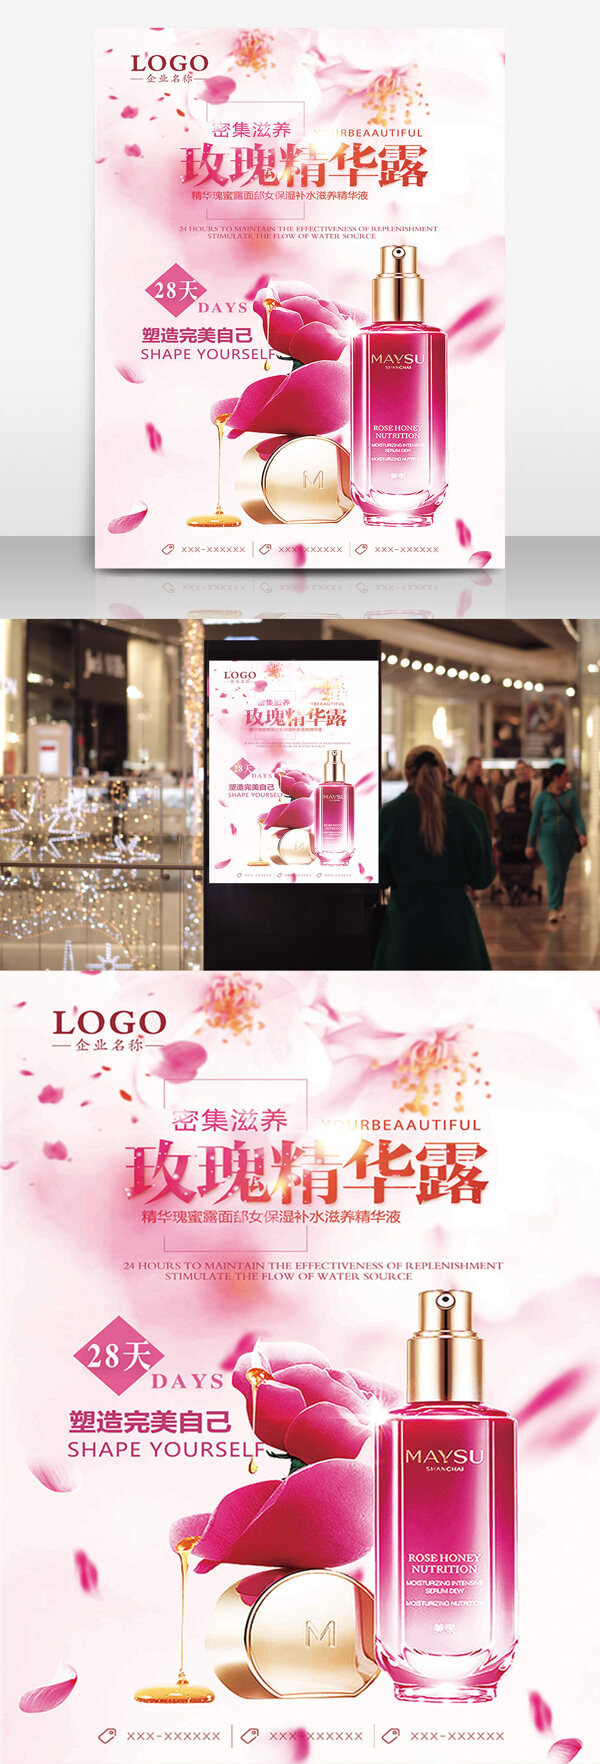 粉色风格化妆品促销海报